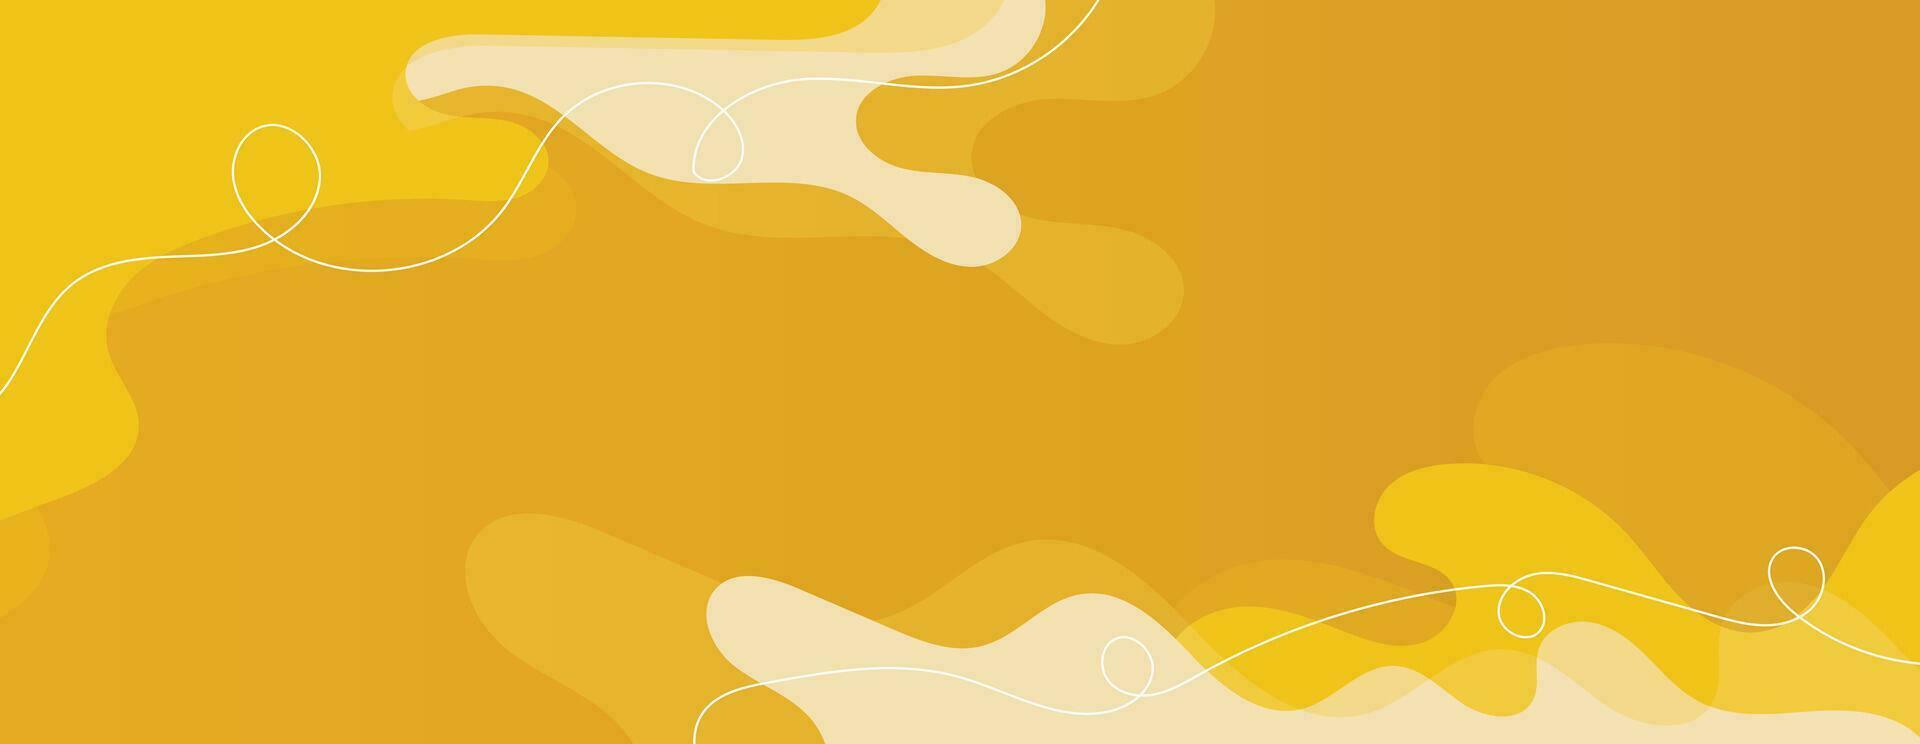 abstrakt gul vätska former. modern Häftigt bakgrund med memphis stil. färgrik flytande Vinka design för baner, affisch, presentation. vektor illustration av dynamisk form tapet